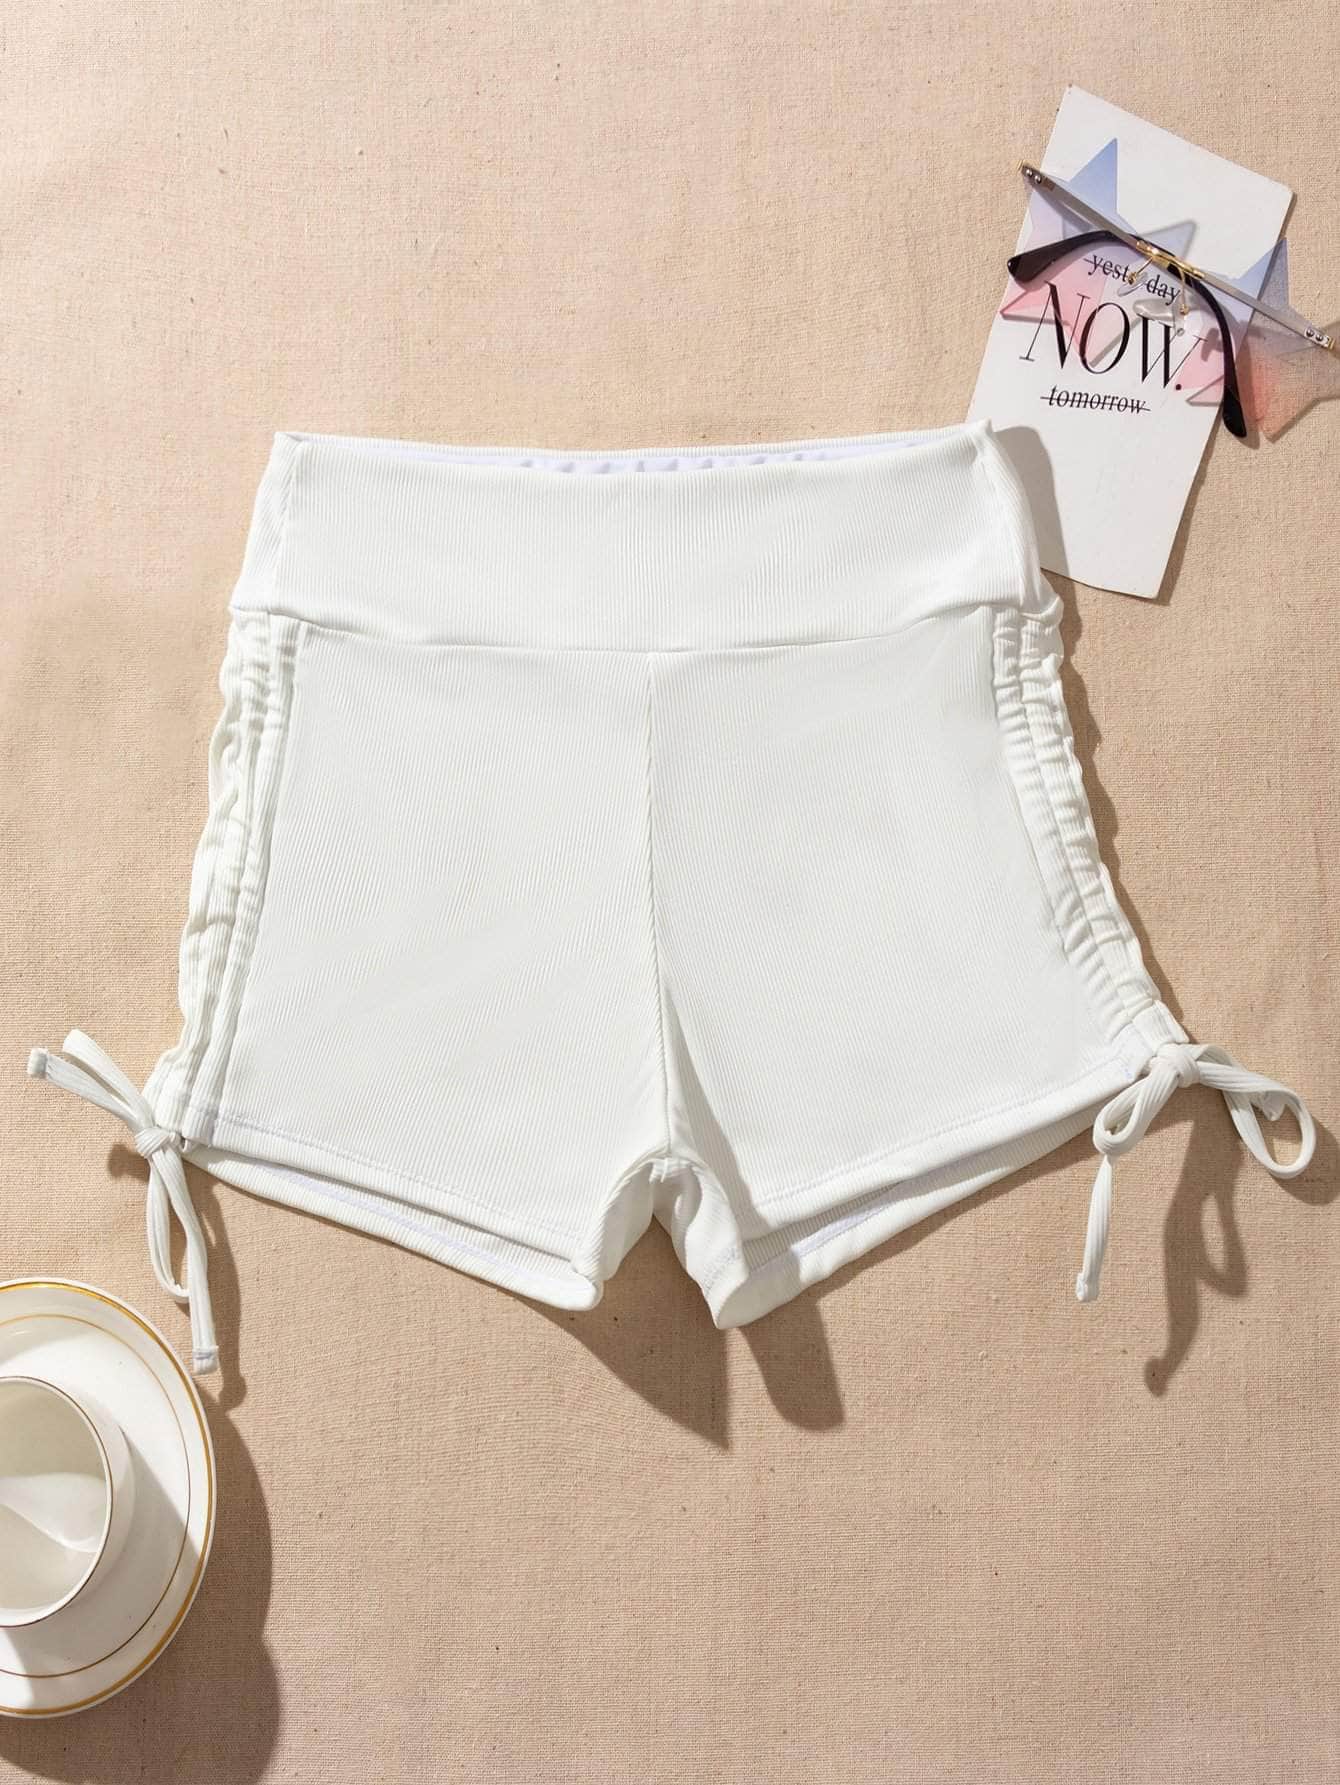 Blanco / S Shorts bikini con cordón lateral